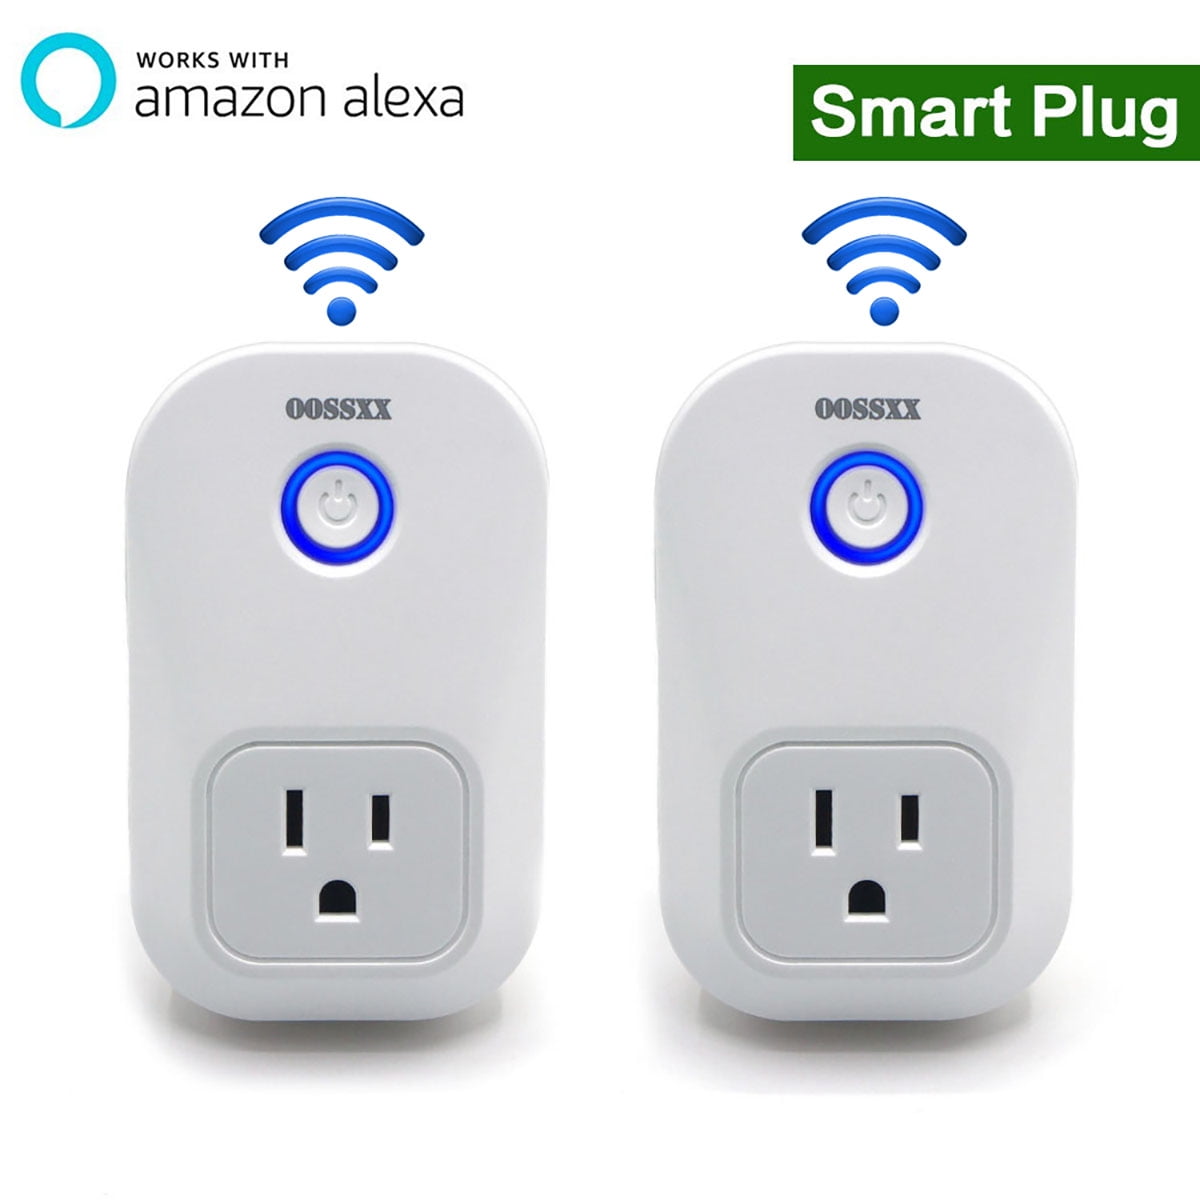 Smart Plug 120 Volt - White